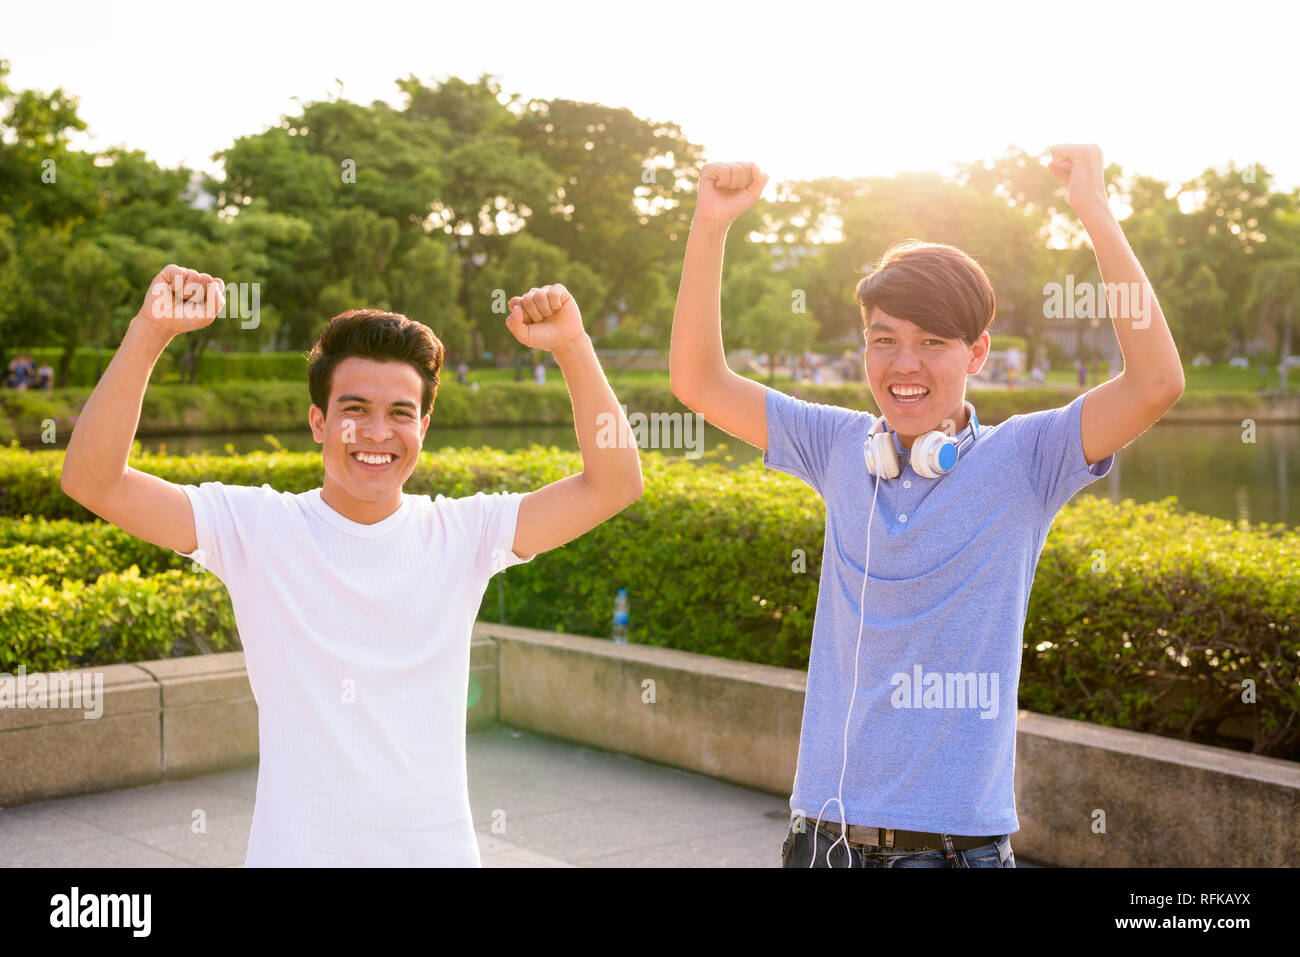 Les jeunes et les jeunes homme asiatique Asian teenage boy à l'ensemble du parc Banque D'Images